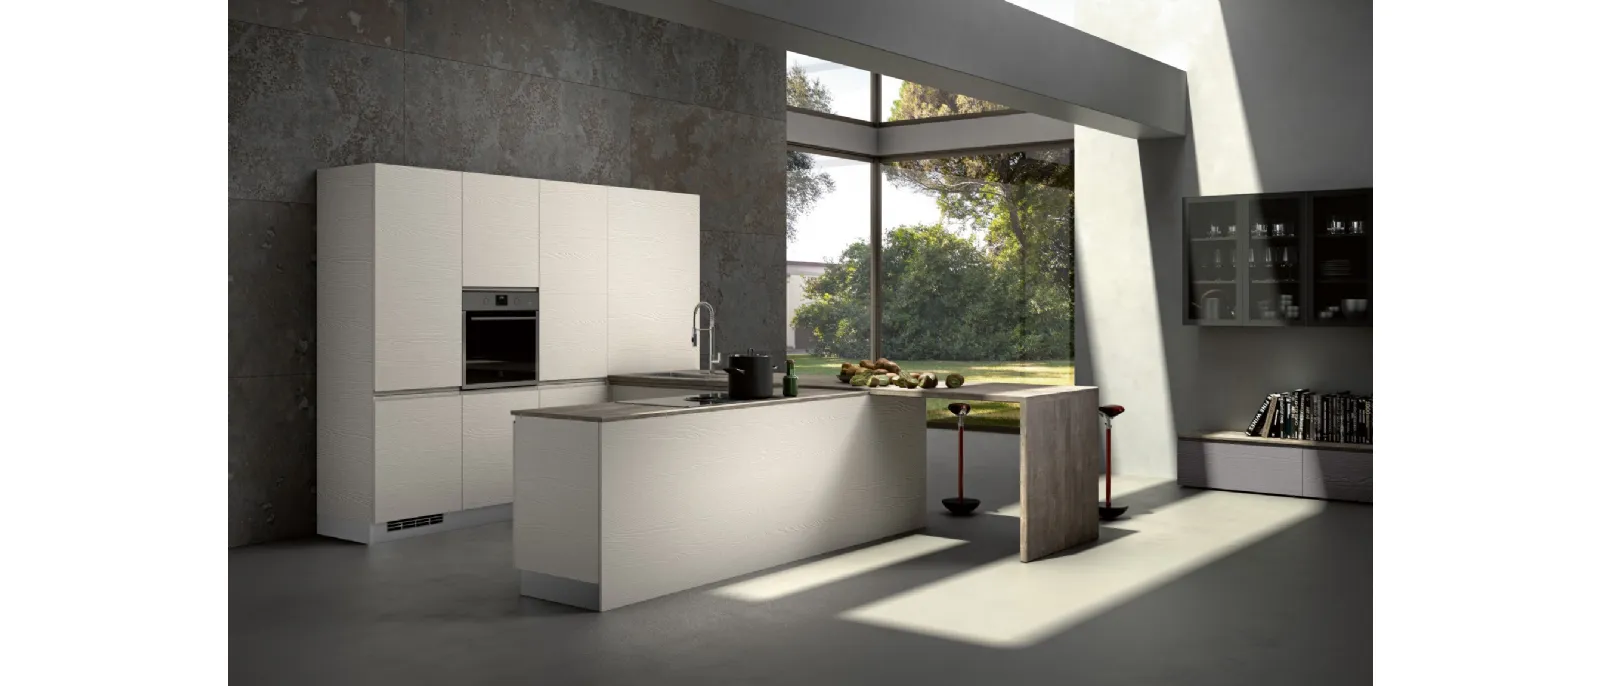 Zenit Comp 3 Modern Kitchen by Essebi